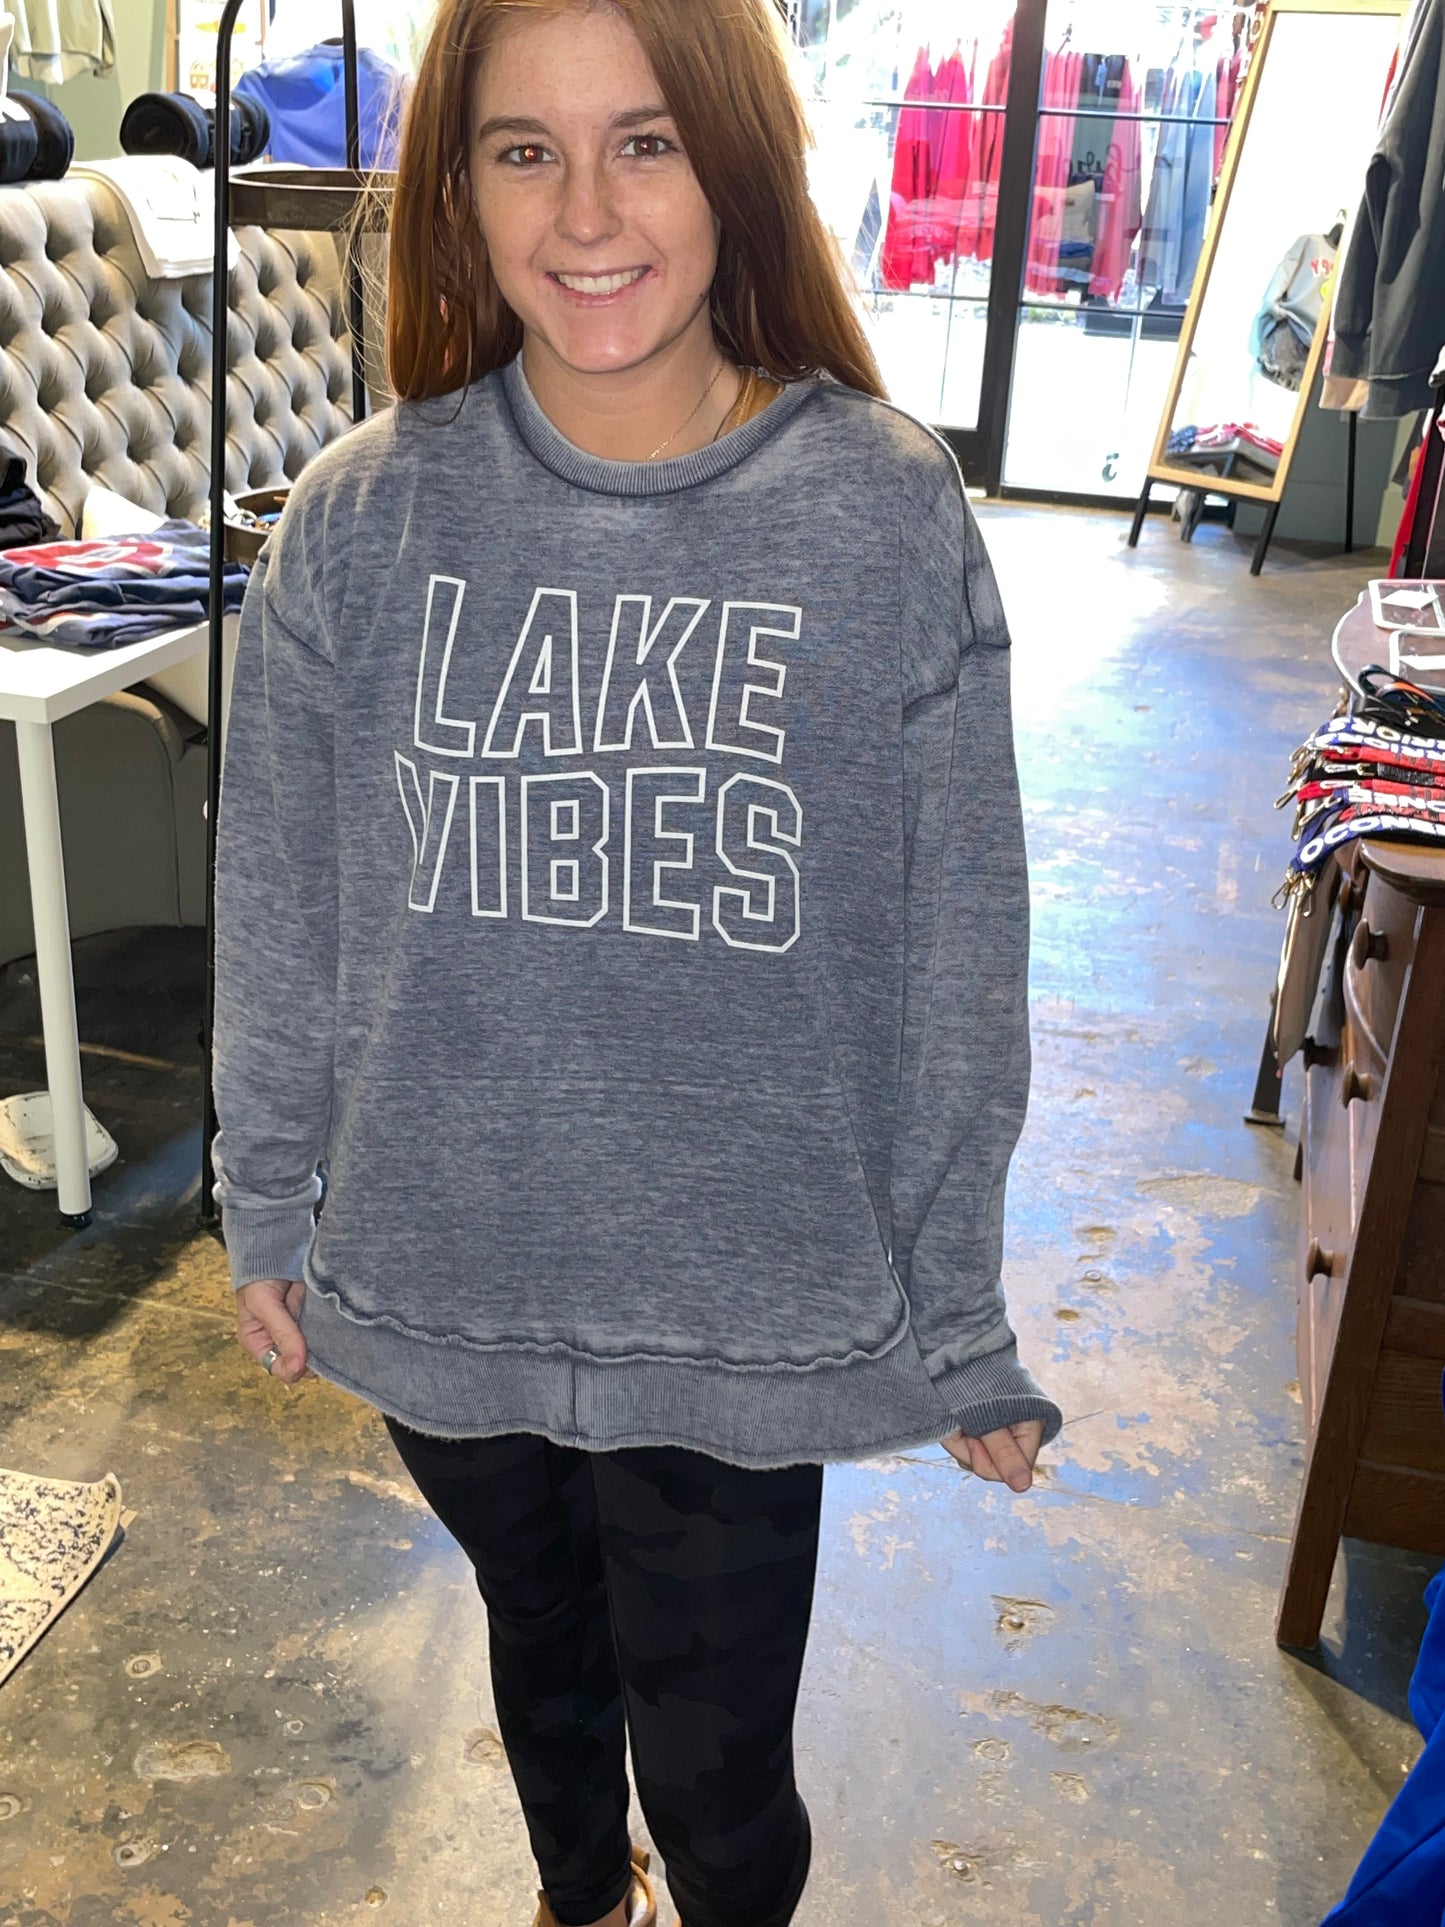 Lake vibes sweatshirt